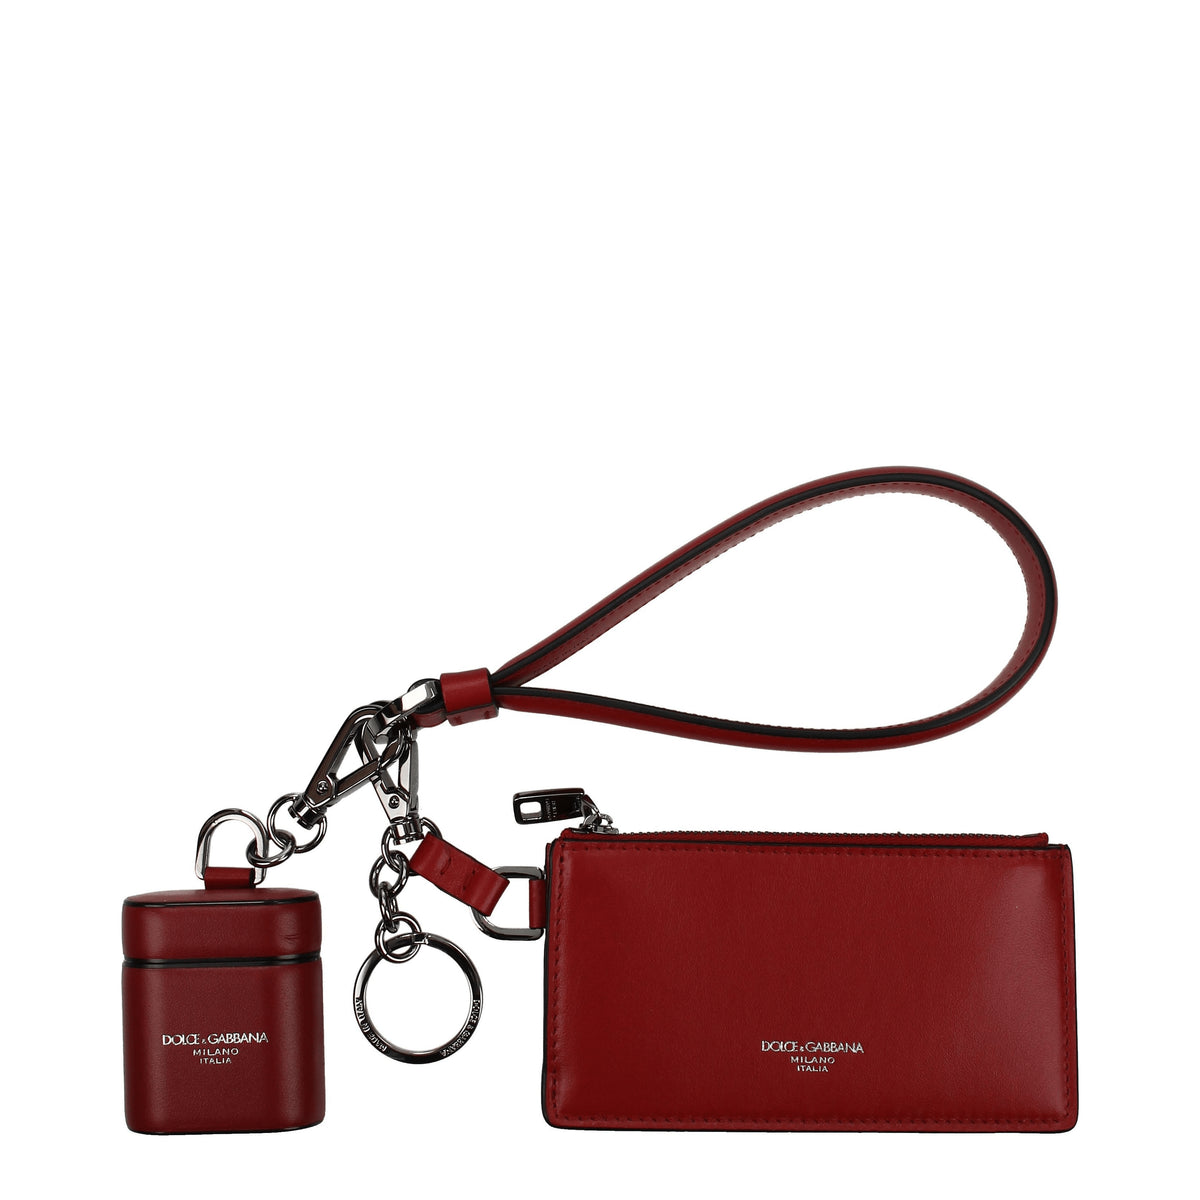 Dolce&Gabbana Portamonete airpods case second generation Donna Pelle Rosso Rosso Scuro